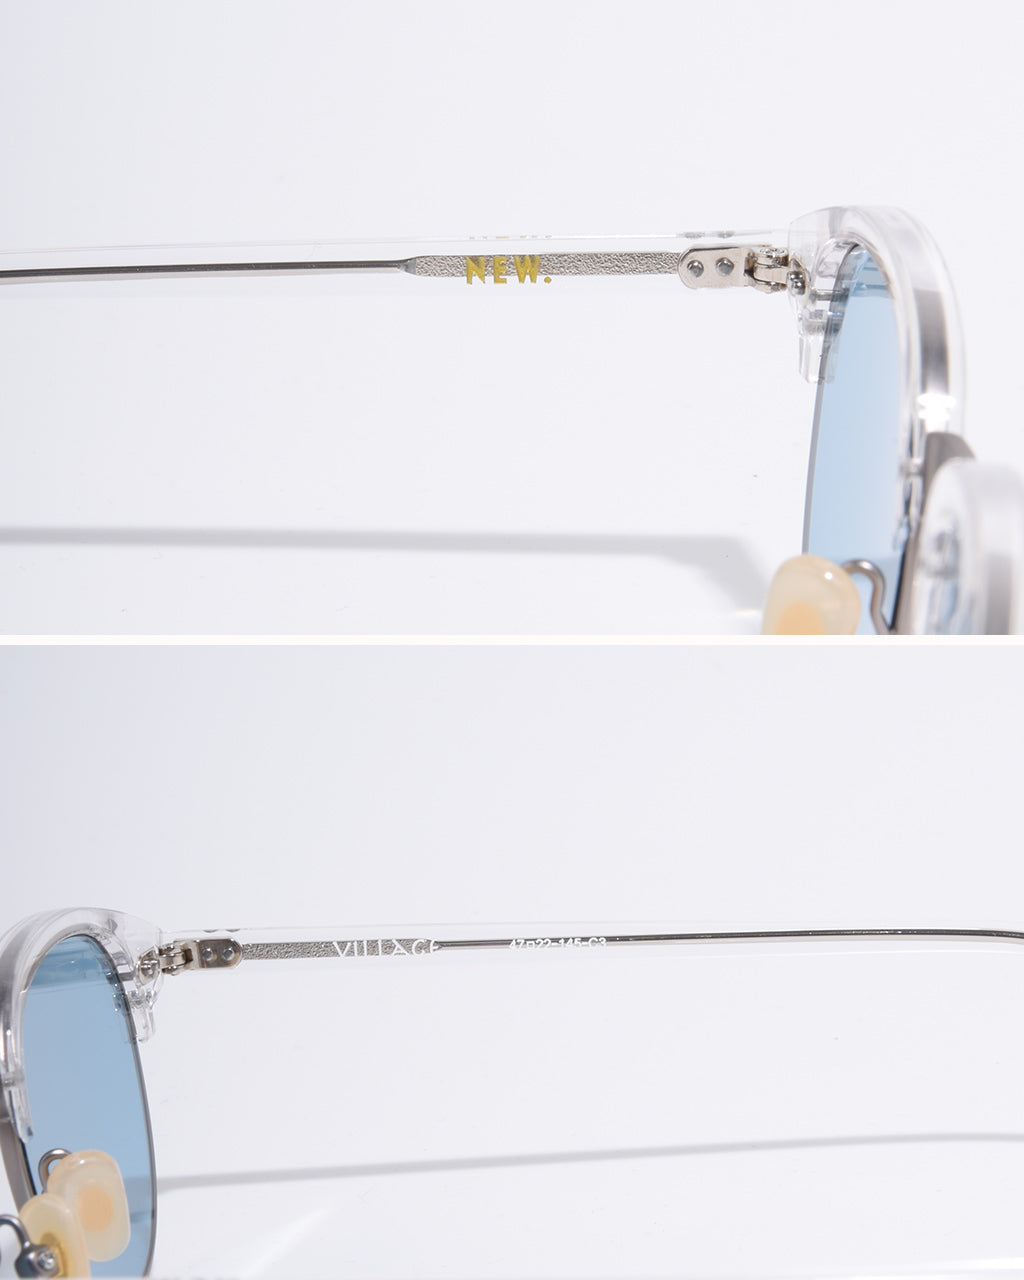 NEW. ニュー ヴィレッジ VILLAGE ブロー型 サングラス 眼鏡 めがね 伊達メガネ カラーレンズ  【送料無料】